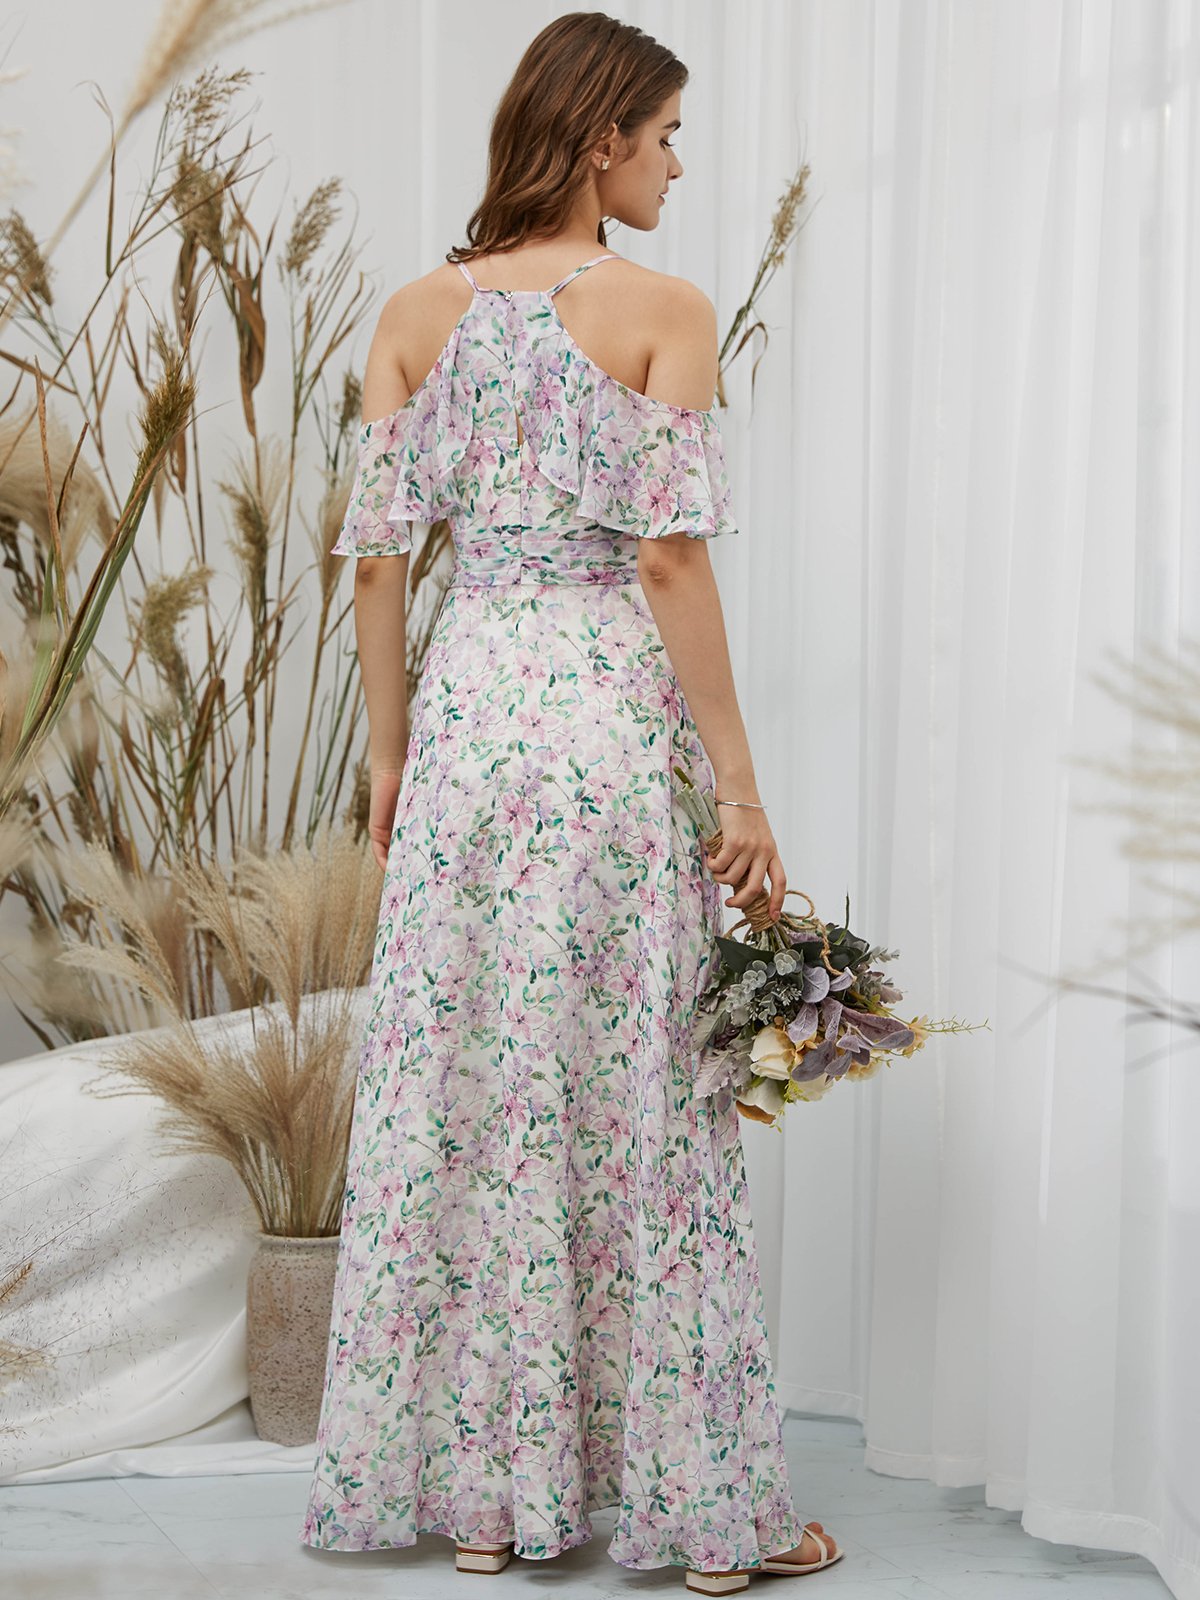 MissJophiel Straps Off the Shoulder Chiffon V Neck Print Floral Floor Length Formal Evening Gown